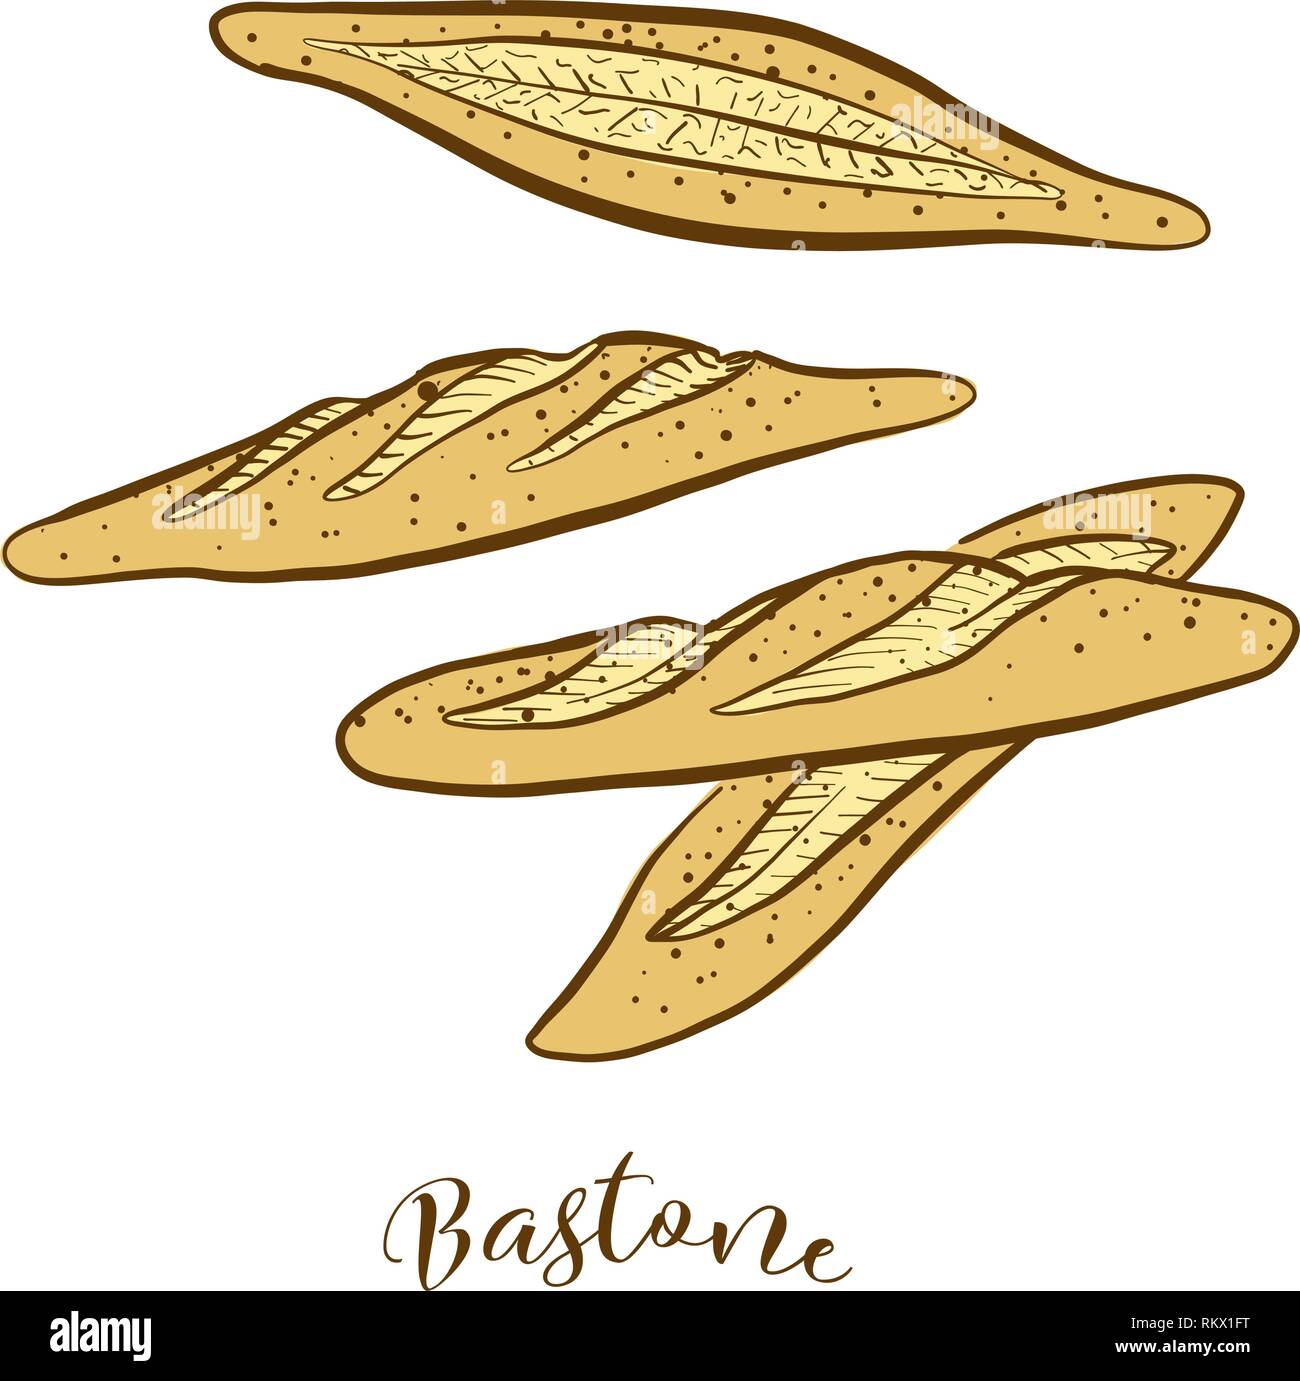 Croquis couleur de pain Bastone. Dessin vectoriel de la levure alimentaire pain, généralement connu en Italie. Illustration du pain de couleur série. Illustration de Vecteur